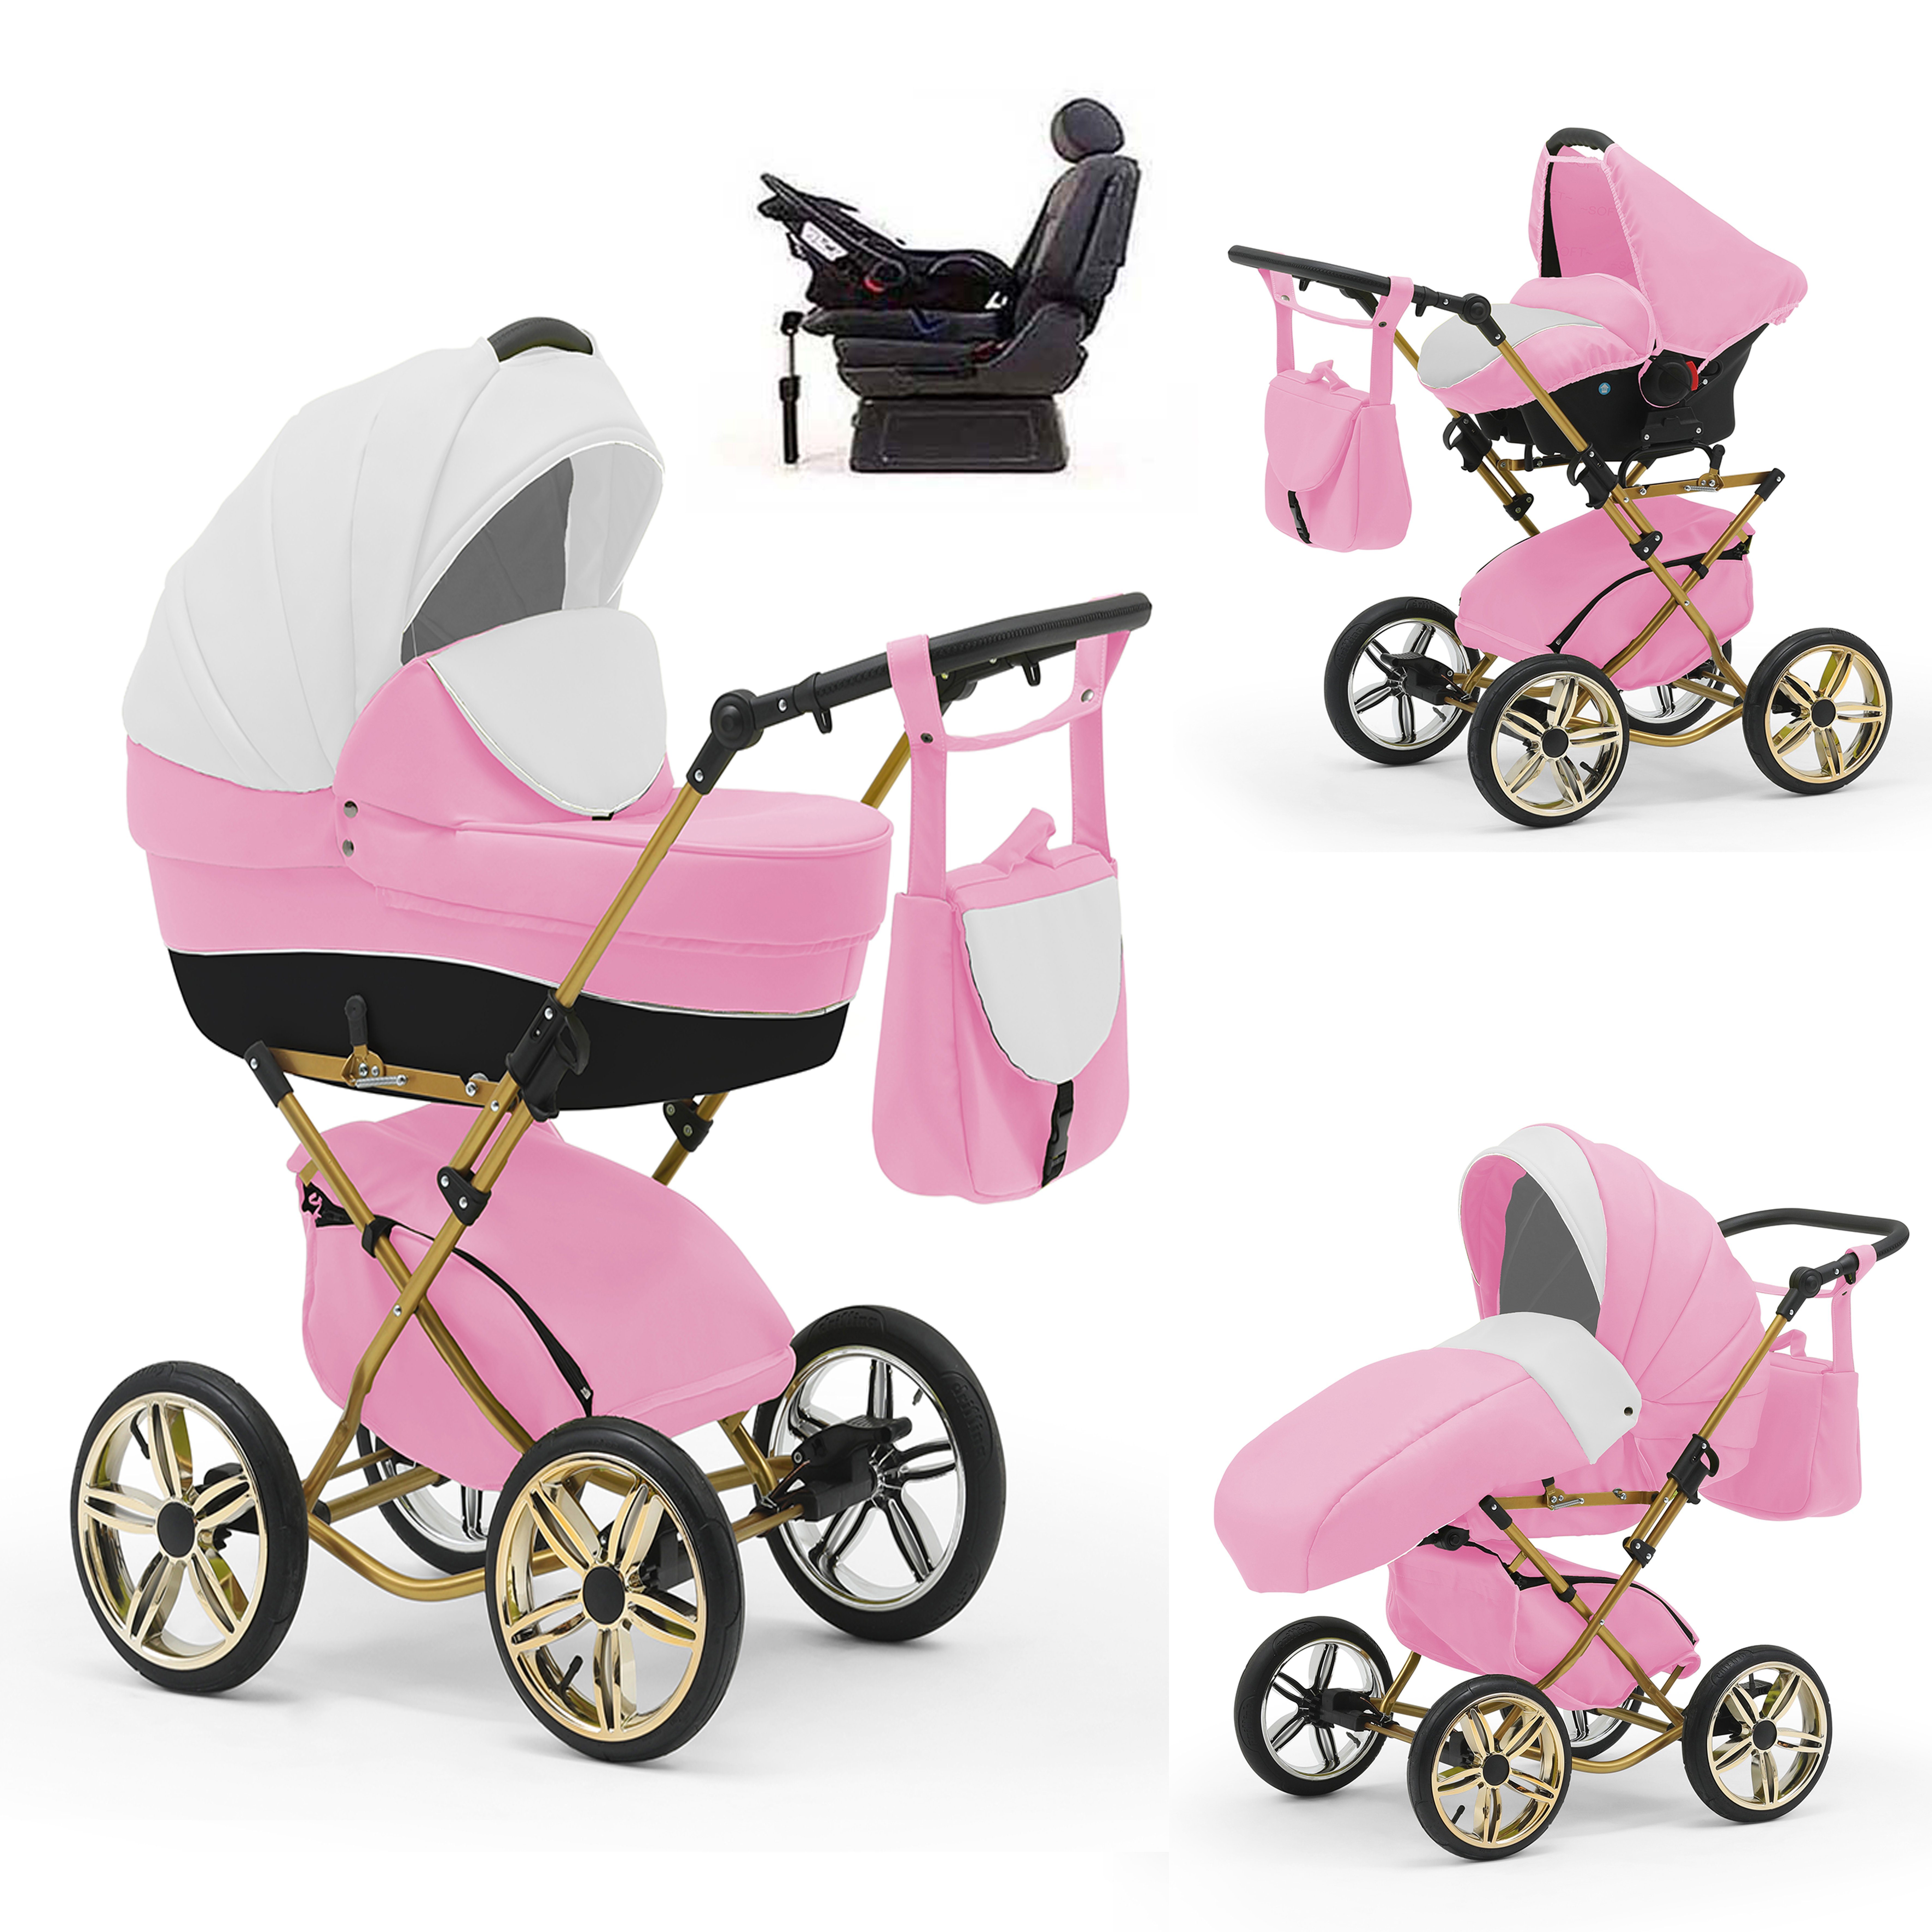 babies-on-wheels Kombi-Kinderwagen Sorento 4 in 1 inkl. Autositz und Iso Base - 14 Teile - in 10 Designs Rosa-Weiß